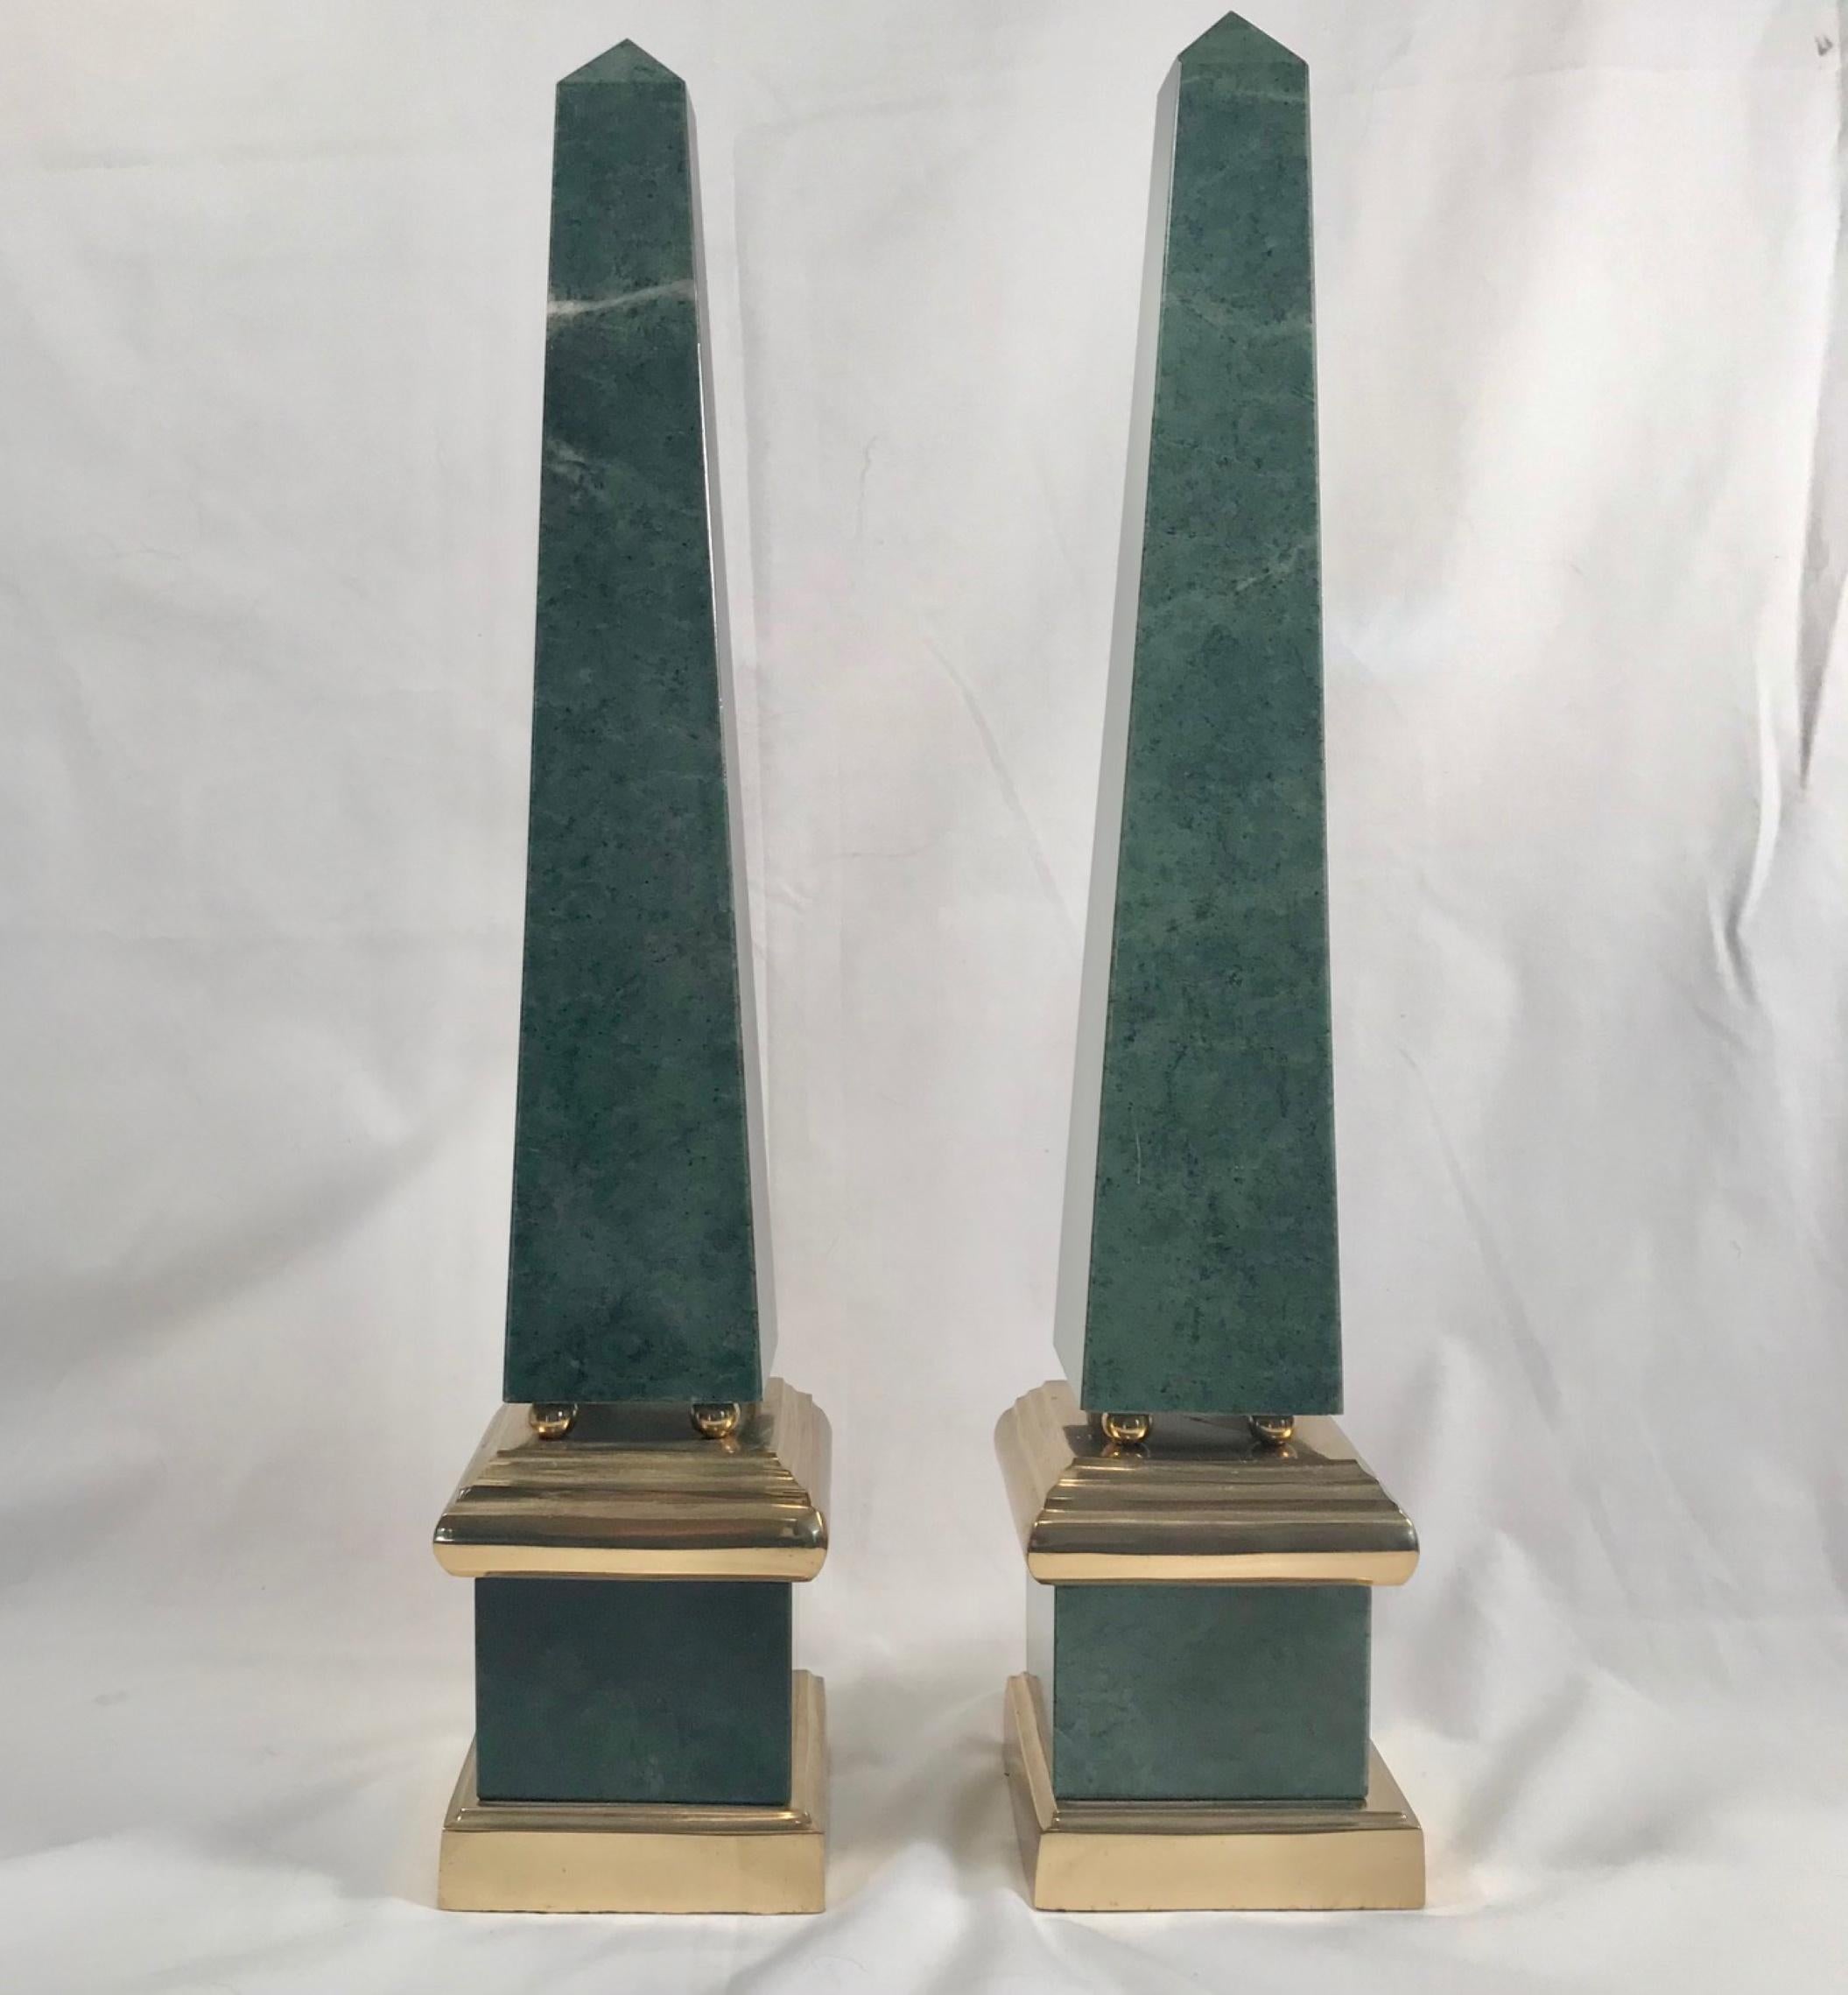 Paar große grüne Obelisken, Messing montiert

Das passende Paar beeindruckender Obelisken aus grünem Marmor (Antico Verde) ist in großem Maßstab gefertigt und in Messing montiert. Ein Sockel aus Messing trägt einen grün geäderten Marmor, der auf